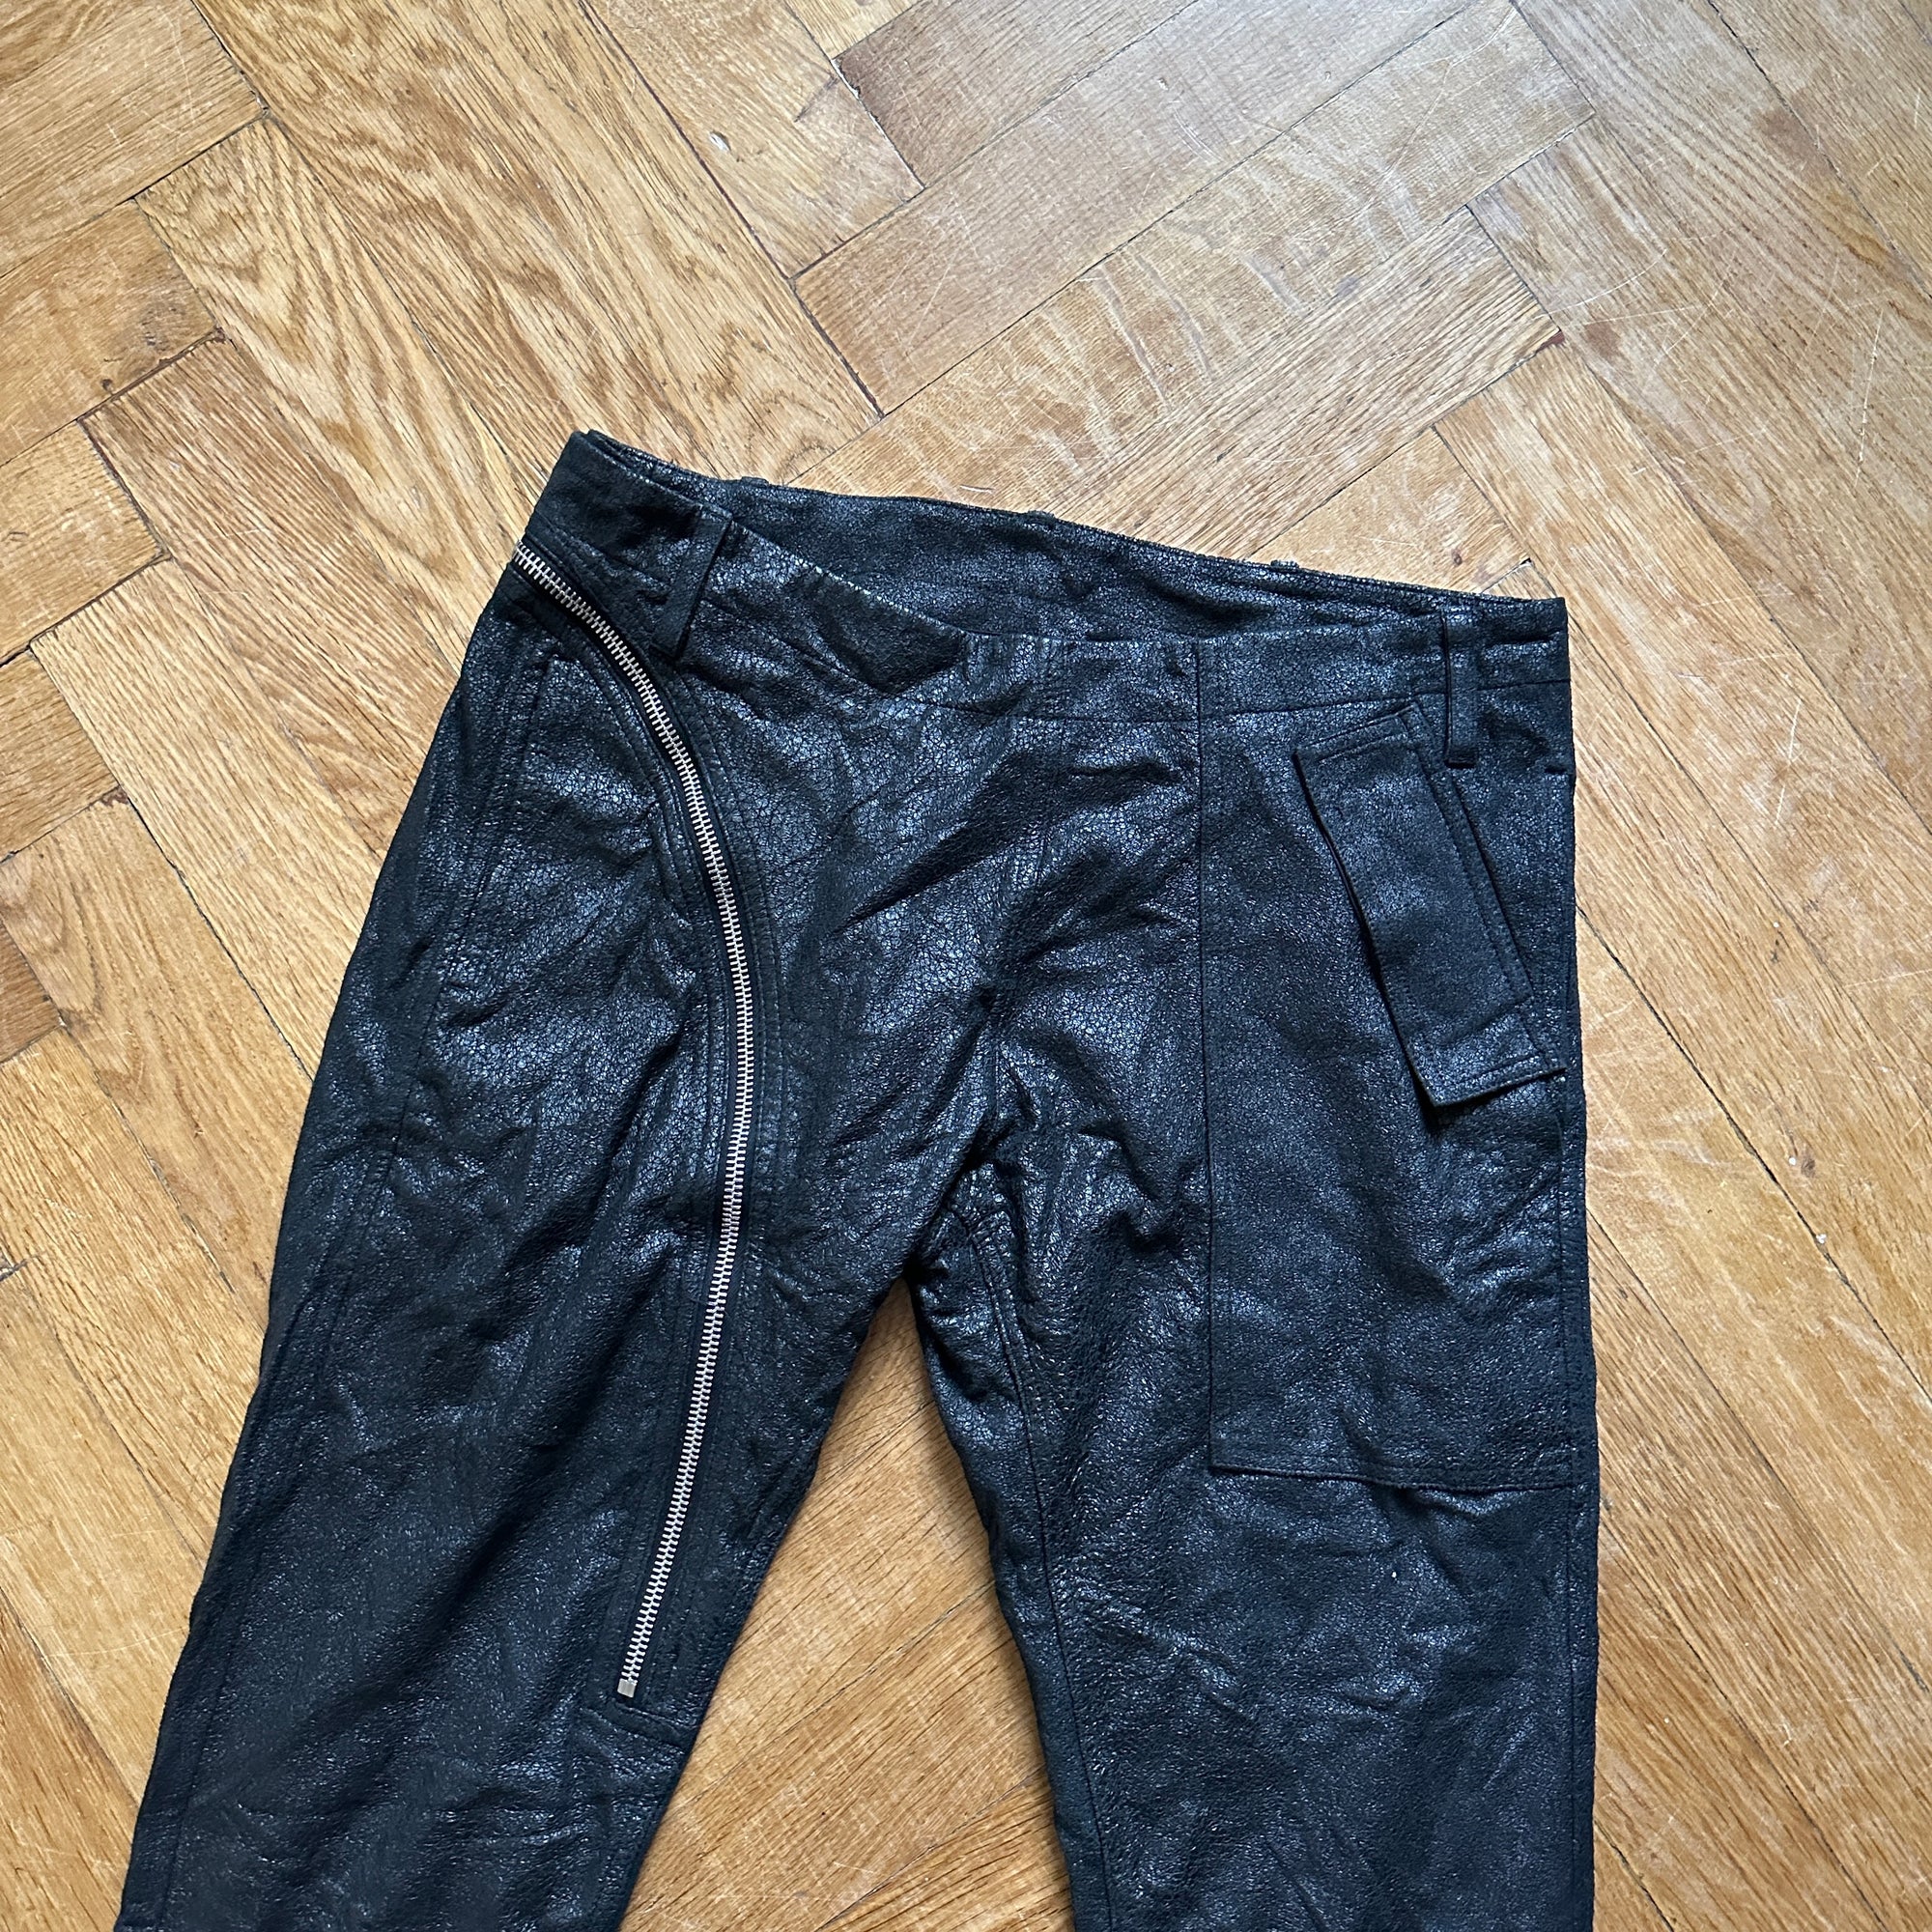 Rick Owens SS14 Washed Lamb Leather Aircut Pants